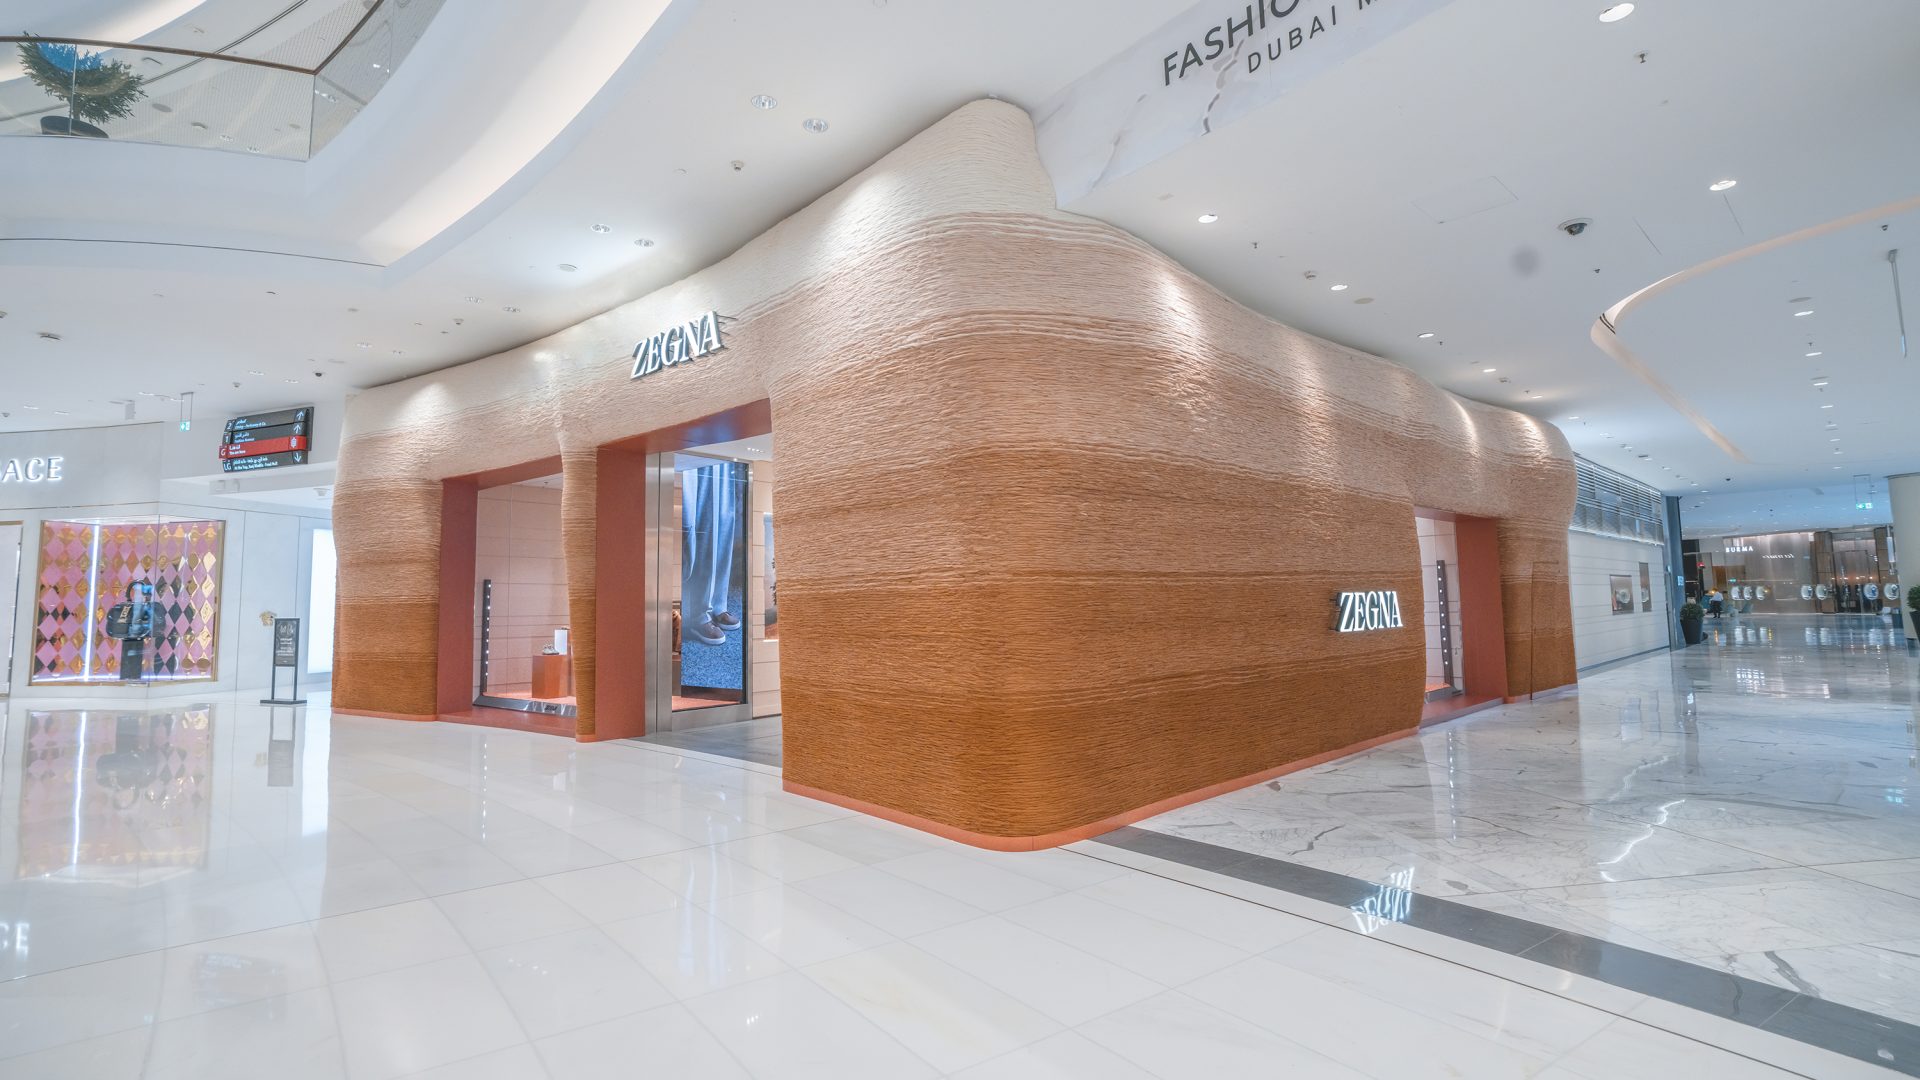 Zegna Boutique Facade Dubai Mall - Pardgroup